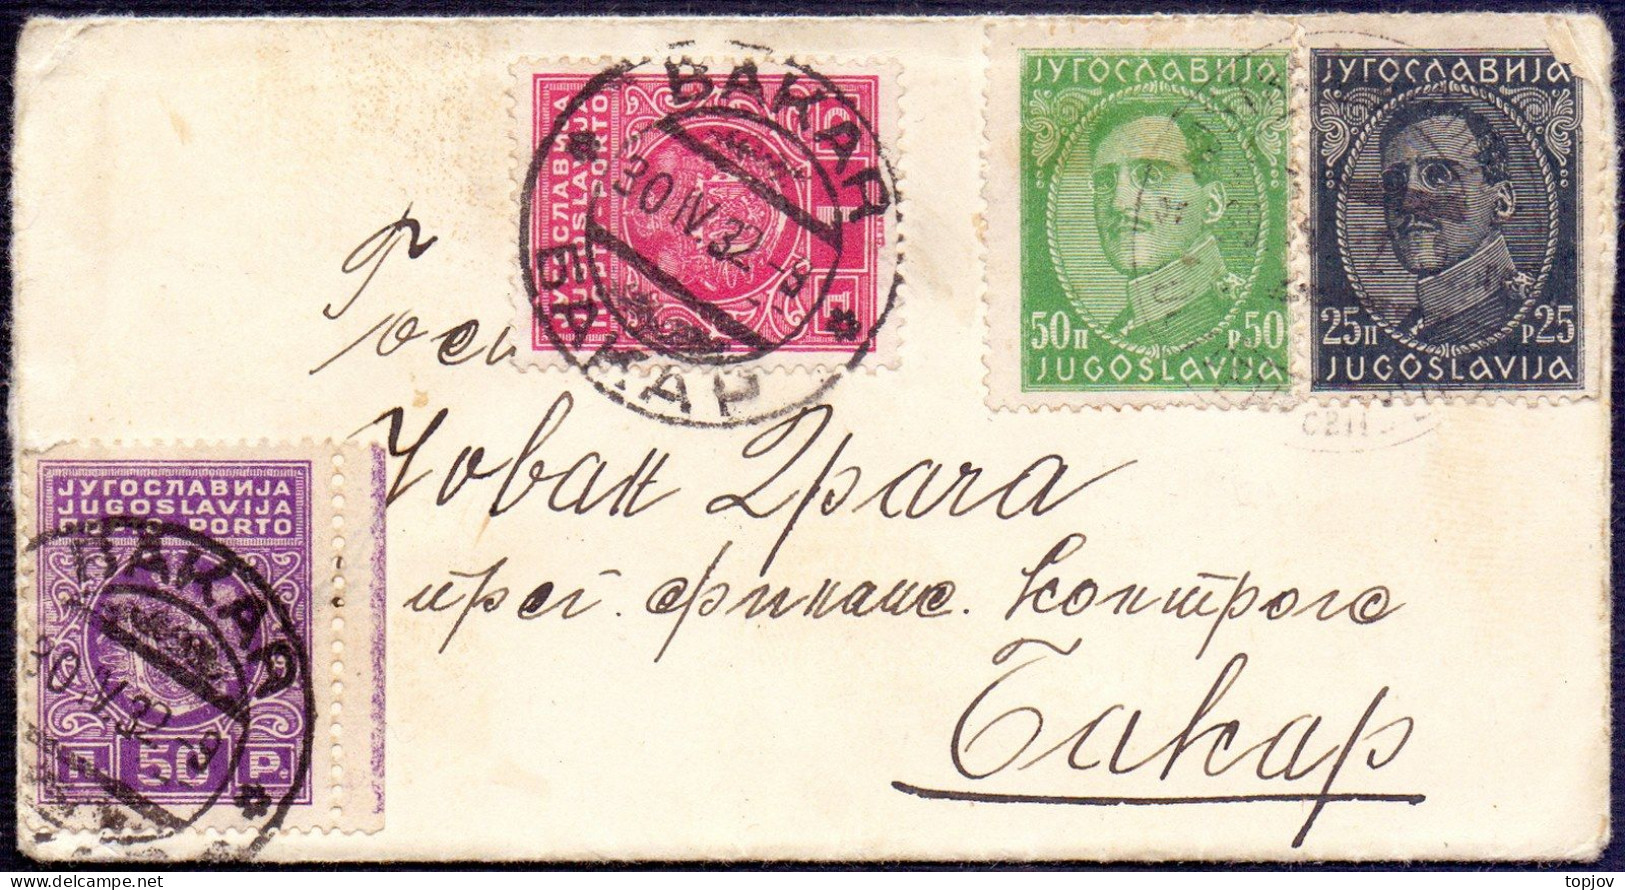 JUGOSLAVIA KINGD. - PORTO 50p + 1Din - BAKAR 1932 - Impuestos